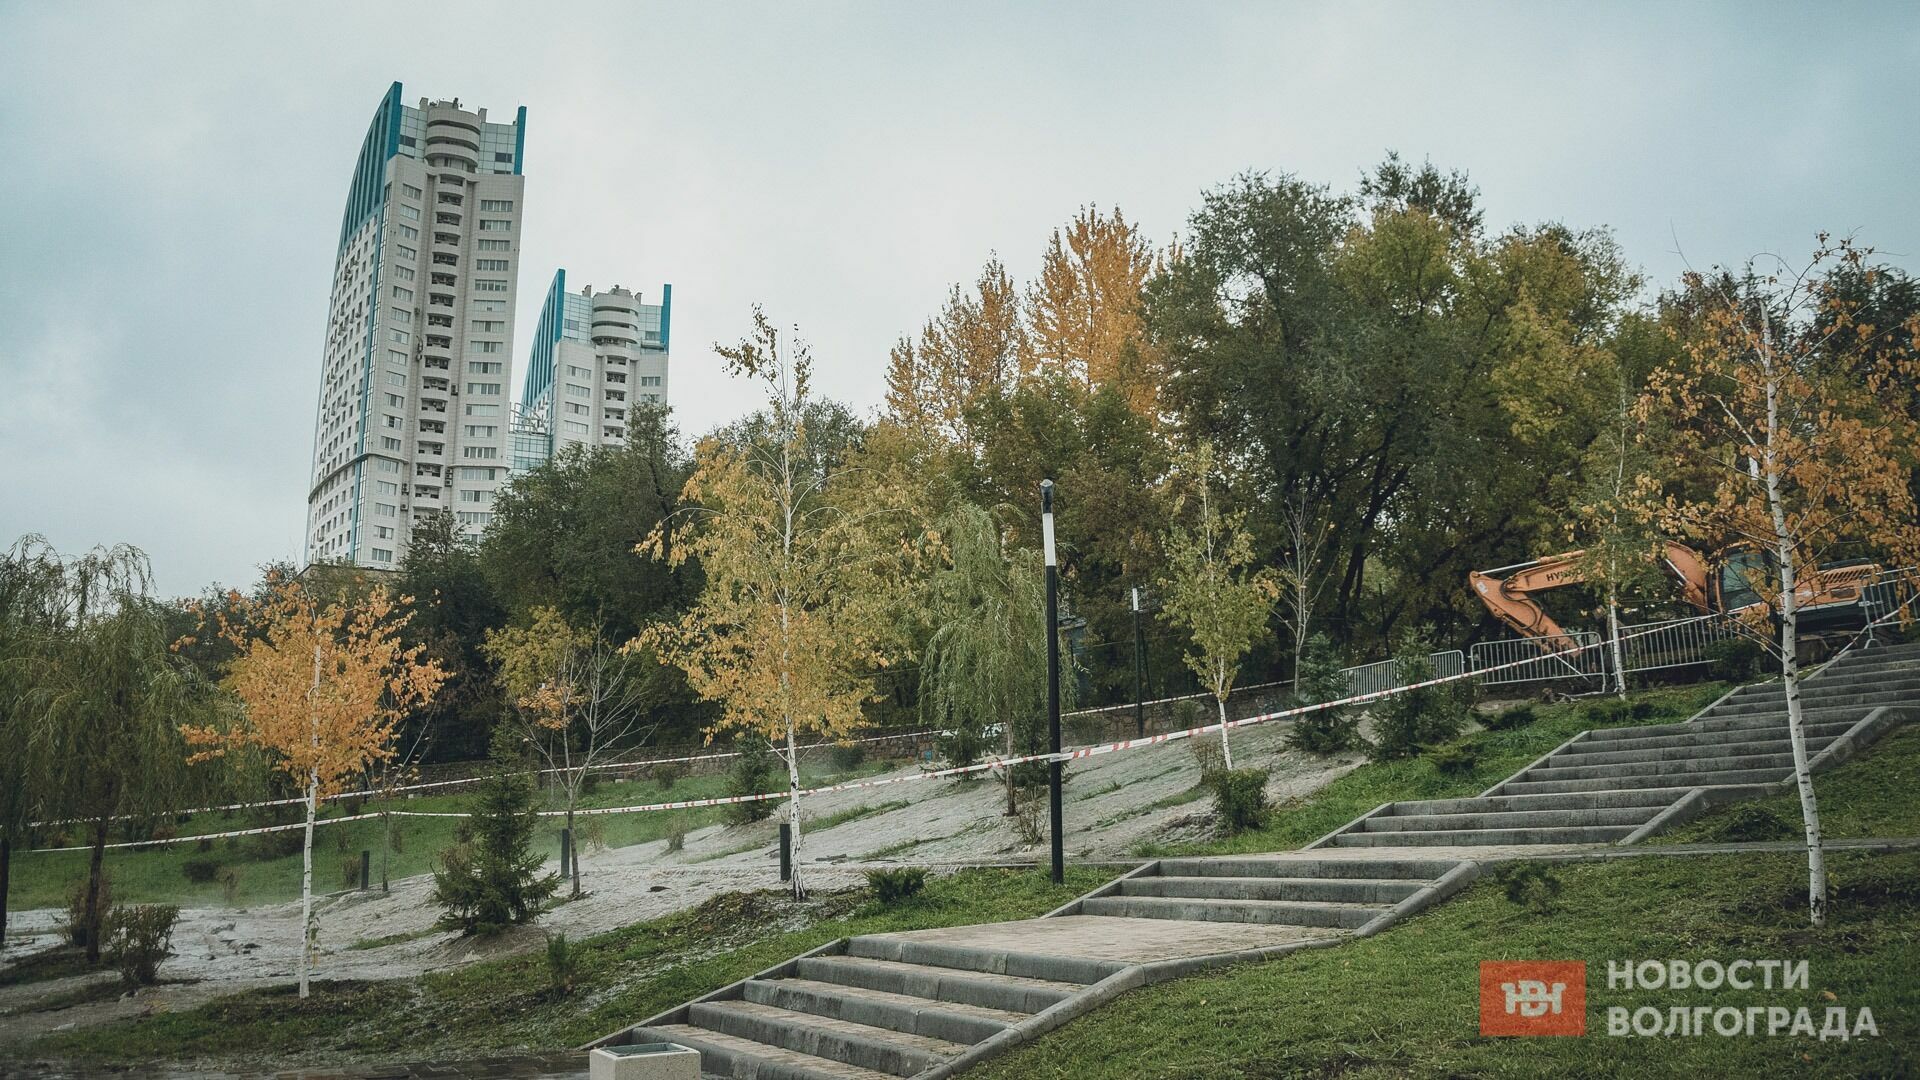 Дезинфекторы начали обрабатывать залитый фекалиями парк в Волгограде